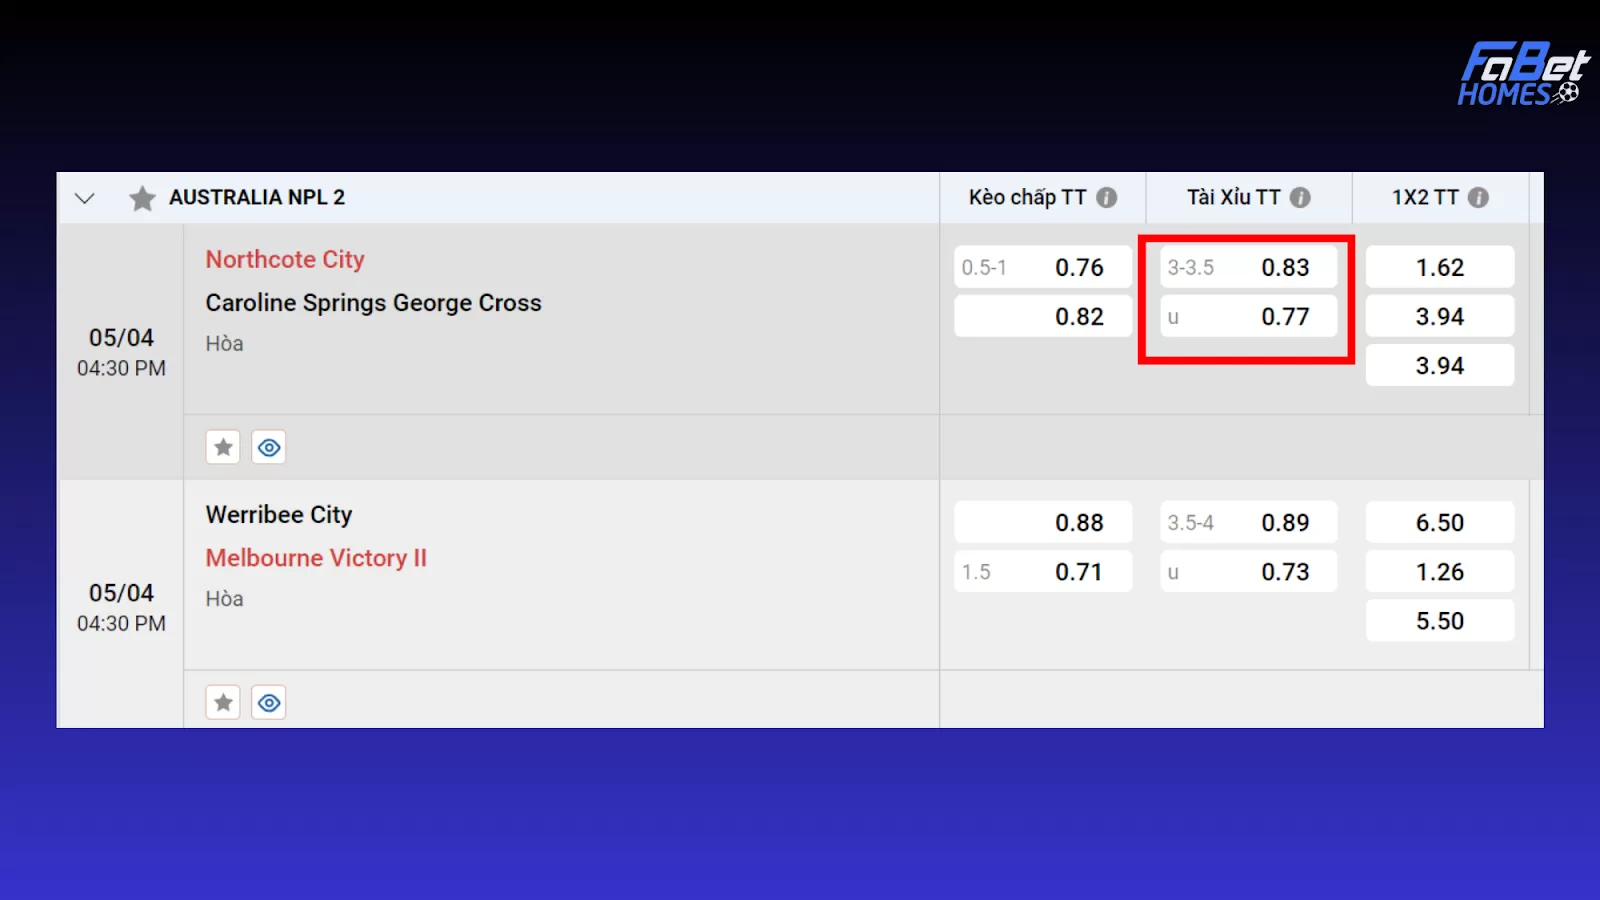 Tài Xỉu toàn trận 3-3.5: Northcote City tỷ lệ cược 0.83; Caroline Springs George Cross tỷ lệ cược 0.77